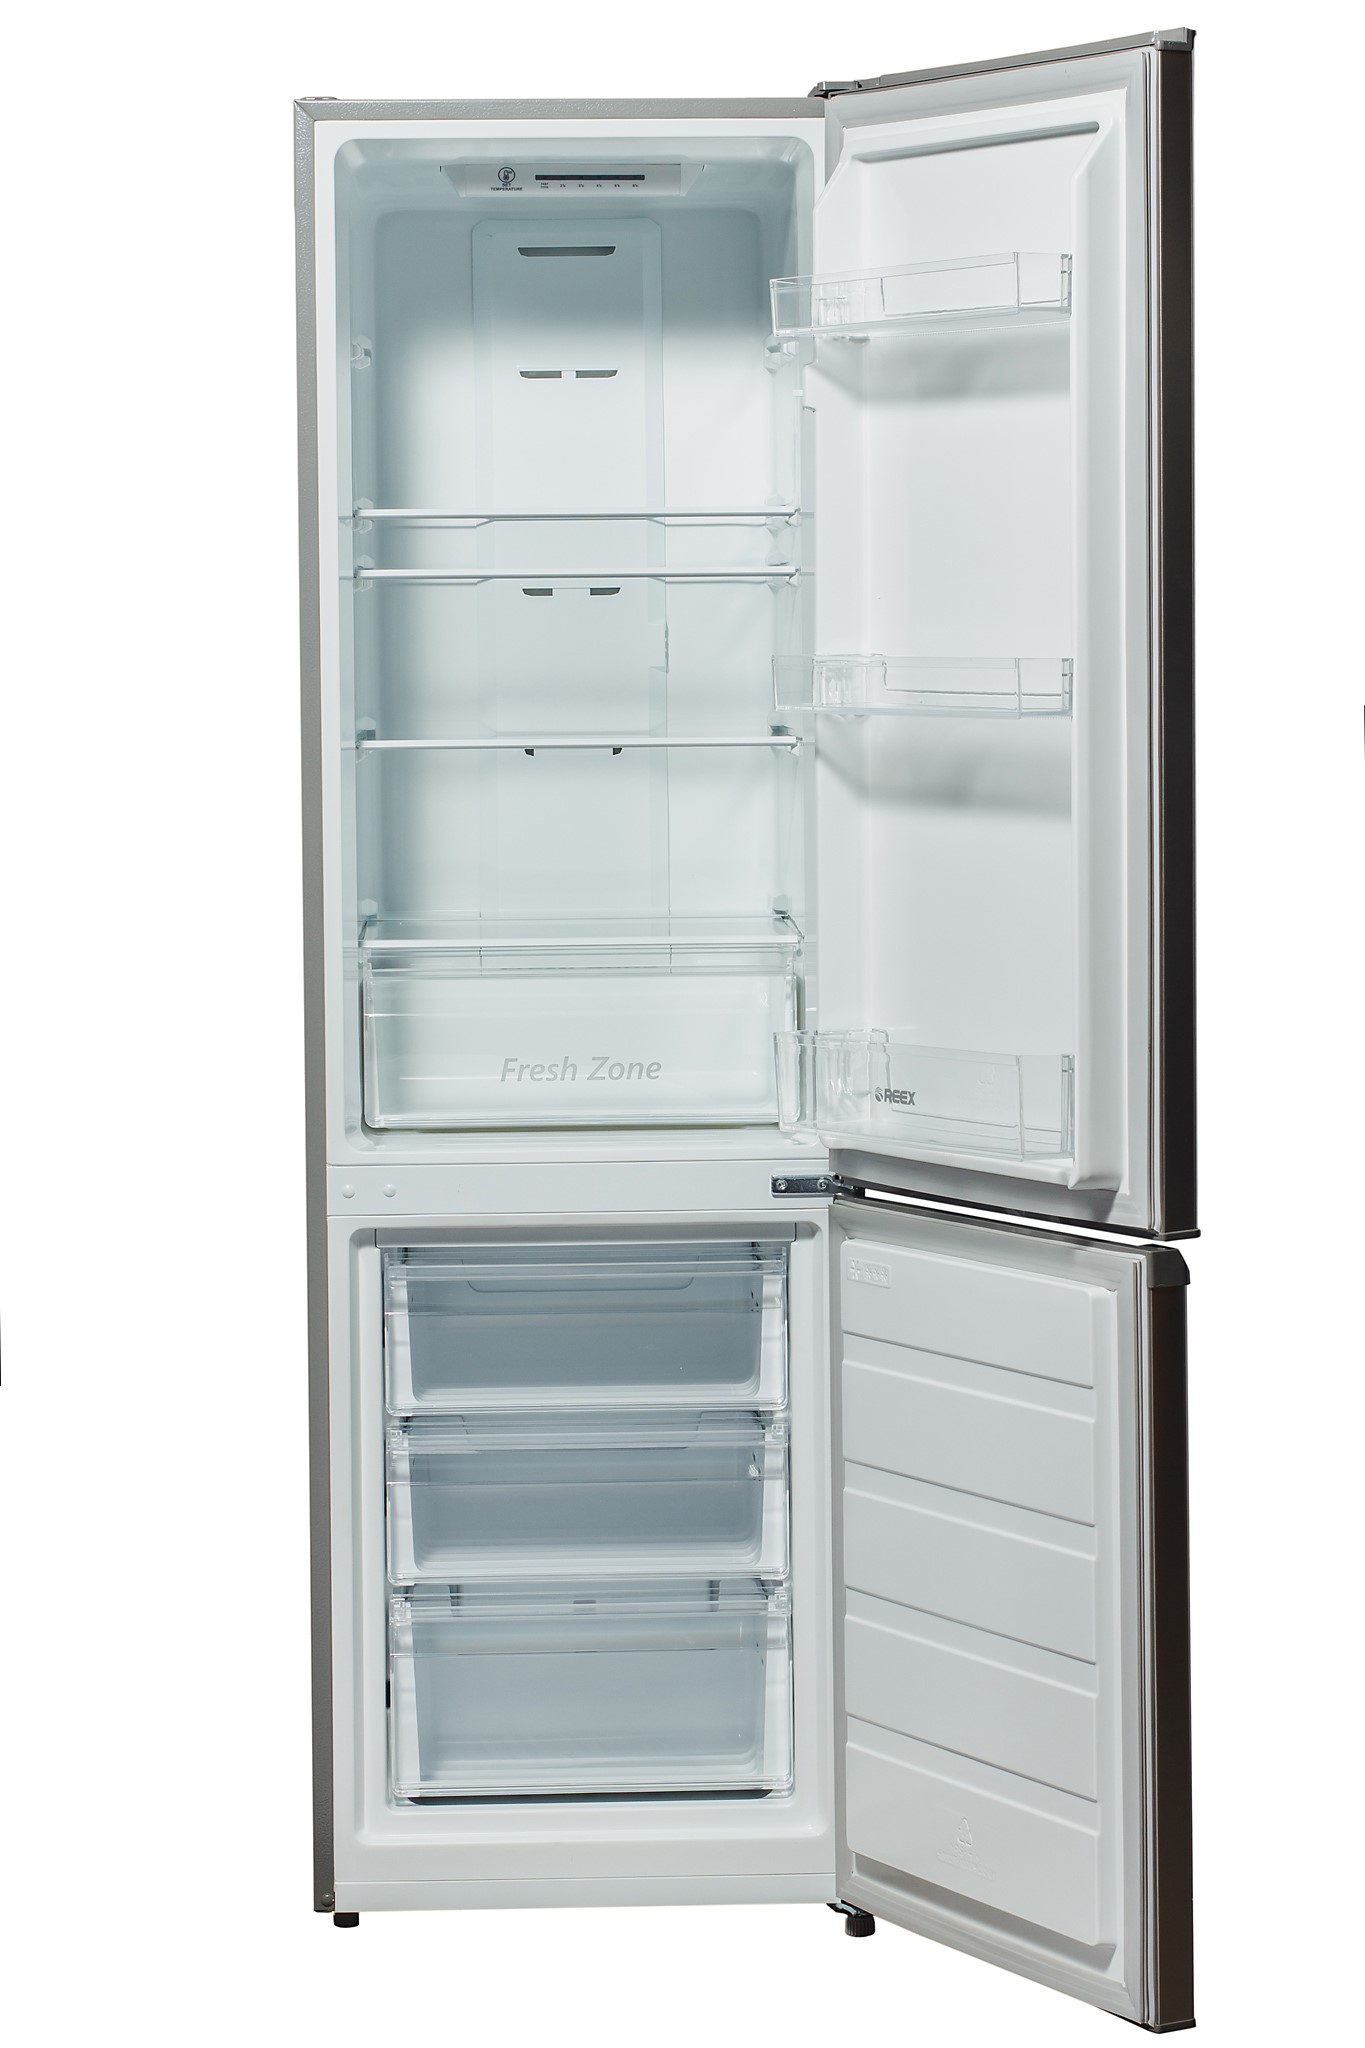 Бытовая техника REEX: холодильники и морозильники российского производства